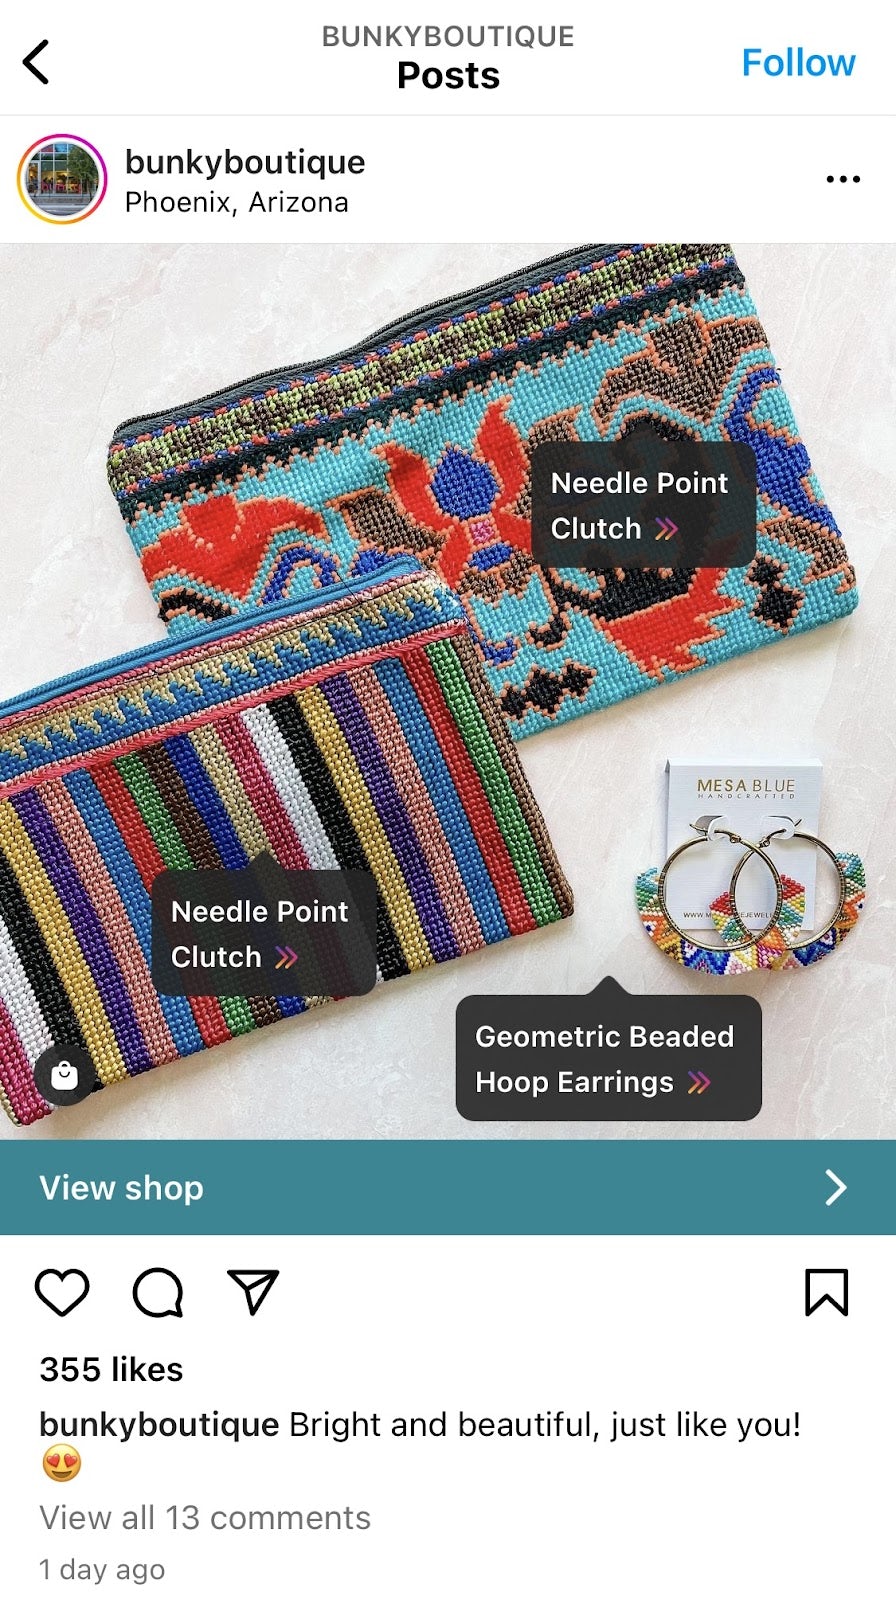 Screenshot vom Bunky Boutique Instagram-Konto, der zeigt, wie es aussieht, wenn eine Marke Artikel aus ihrem Shop markiert